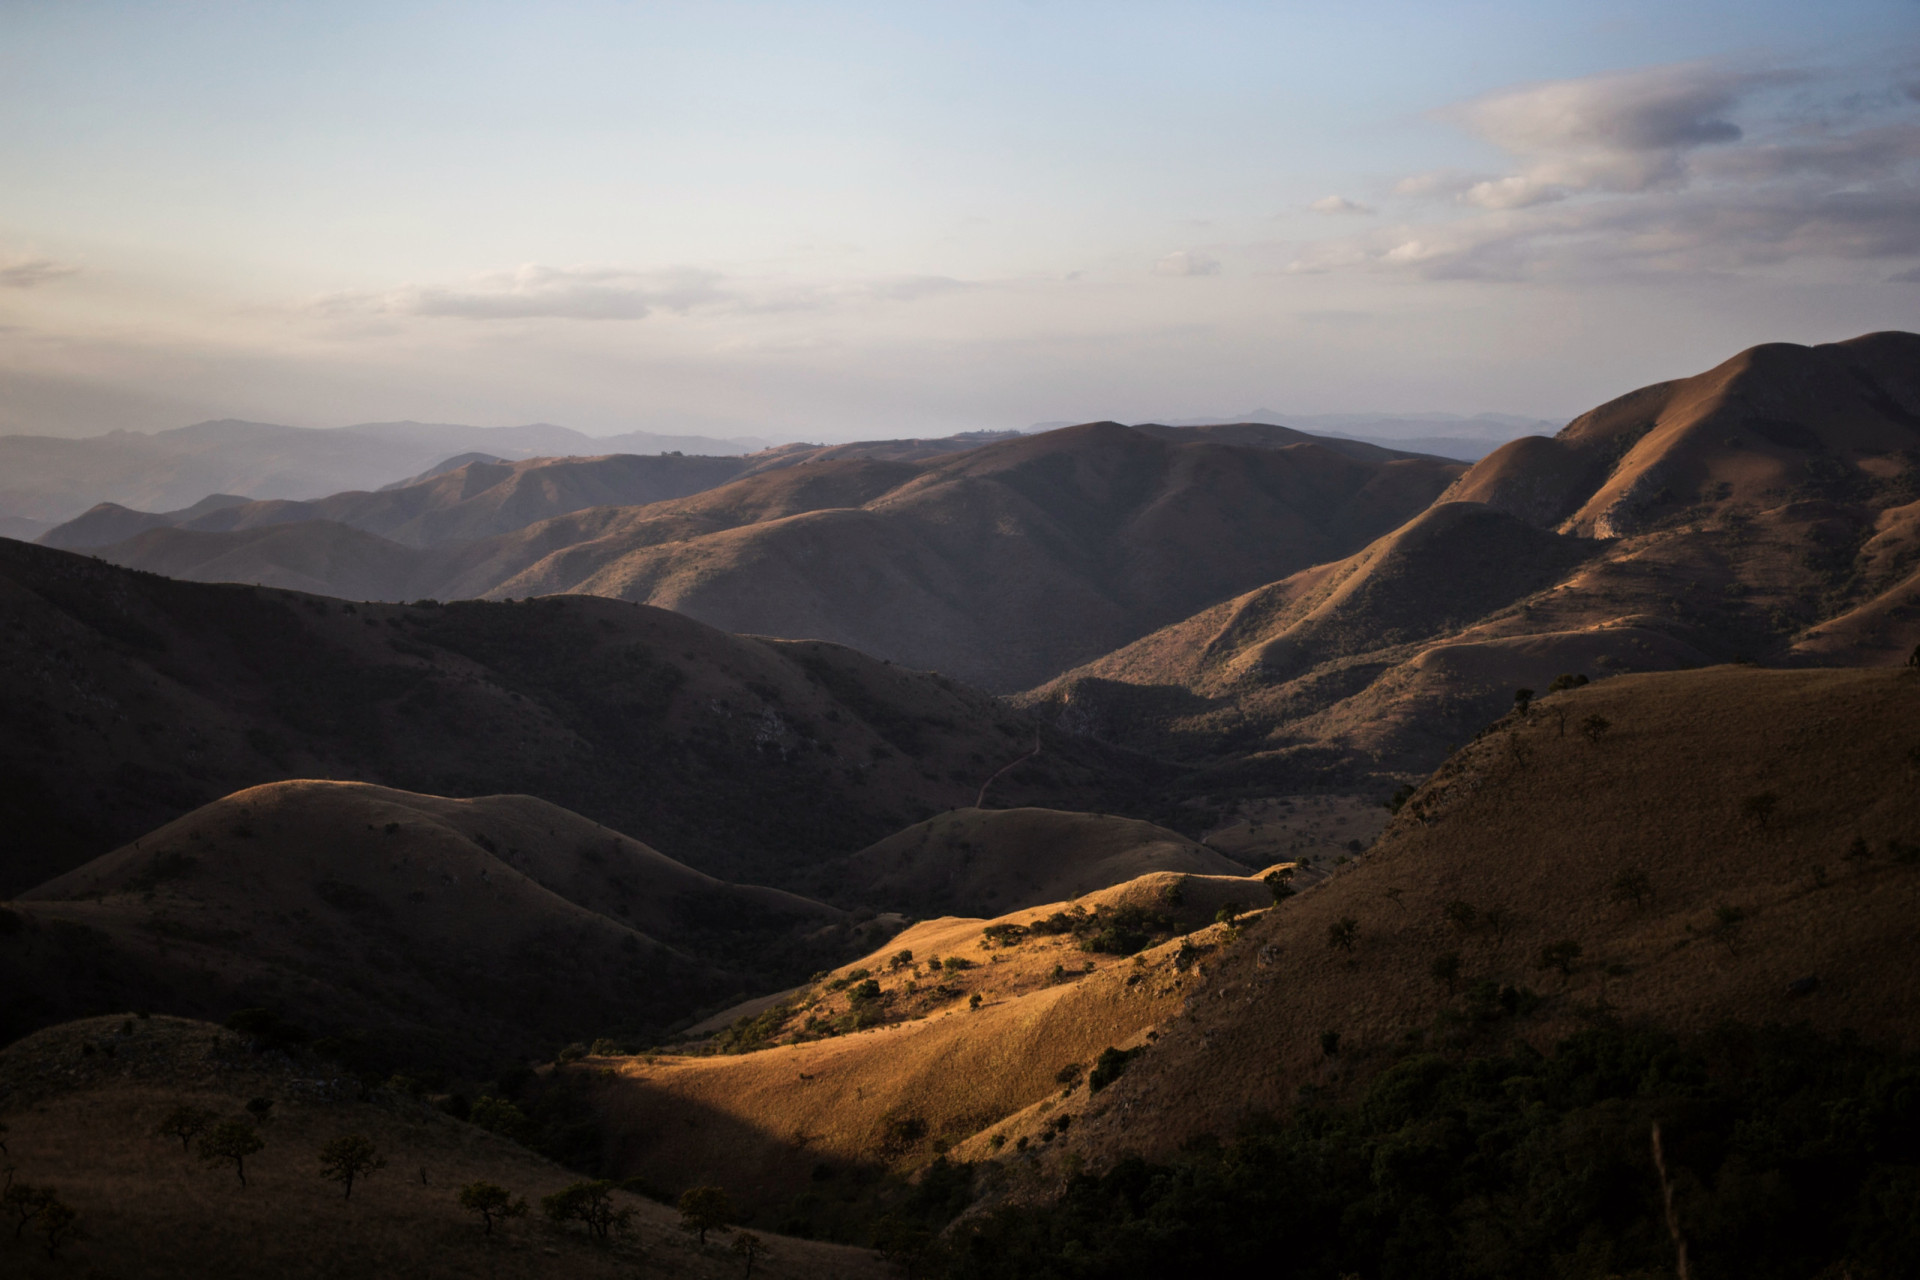 <p>Les montagnes de Barberton Makhonjwa, qui font partie de la ceinture de roches vertes de Barberton qui s'étend sur l'Afrique du Sud et le Swaziland, forment la plus ancienne chaîne de montagnes du monde. Cette chaîne, souvent décrite comme la "genèse de la vie", présente les plus anciennes roches exposées sur Terre, dont l'âge est estimé entre 3,2 et 3,6 milliards d'années.</p><p>Tu pourrais aussi aimer:<a href="https://www.starsinsider.com/n/435795?utm_source=msn.com&utm_medium=display&utm_campaign=referral_description&utm_content=648312"> Affaire George Floyd : l'ancien policier reconnu coupable</a></p>